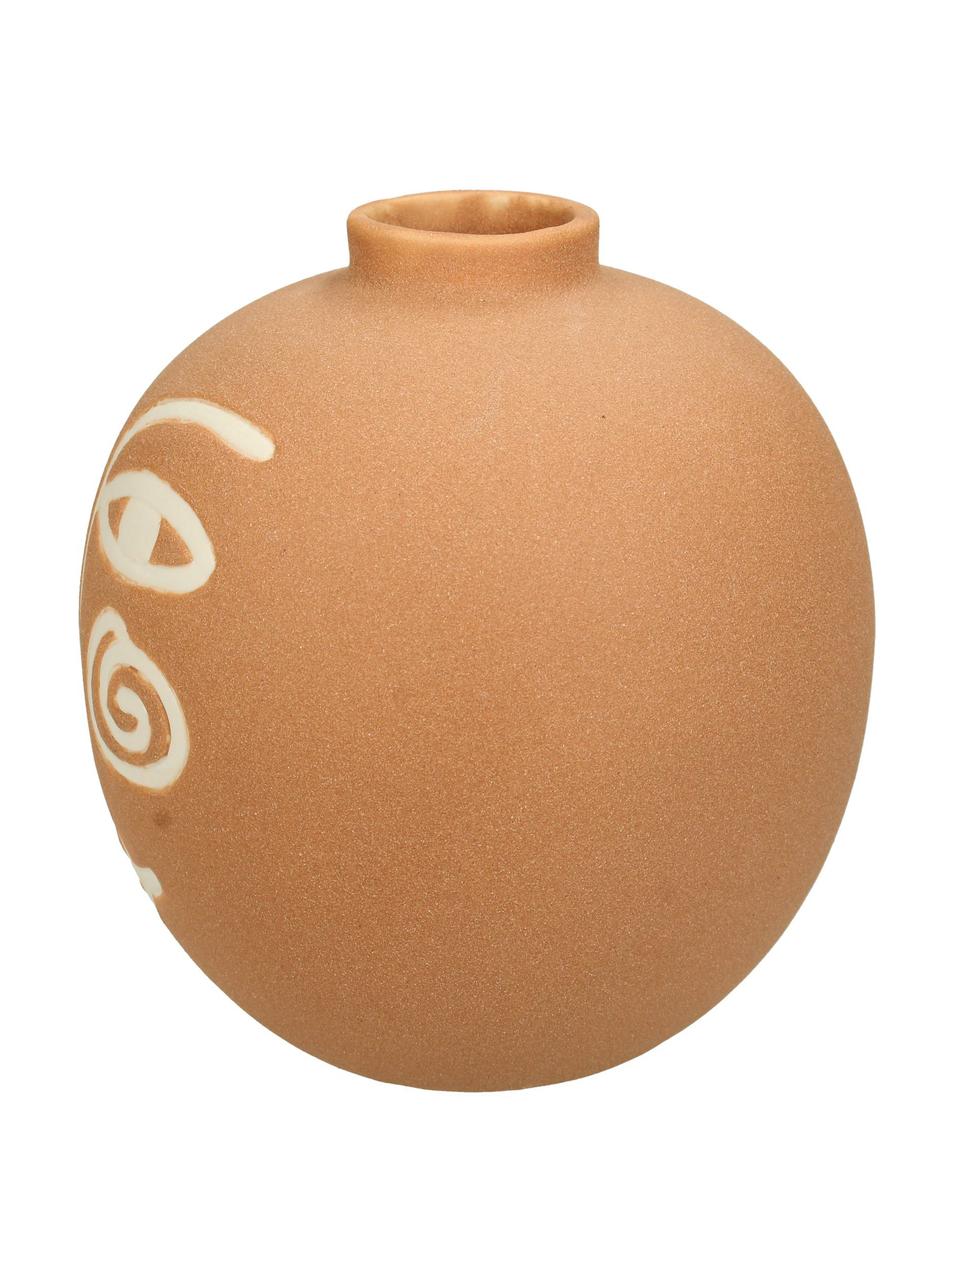 Vase Blink aus Steingut, Steingut, Orange, Weiß, Ø 16 x H 16 cm